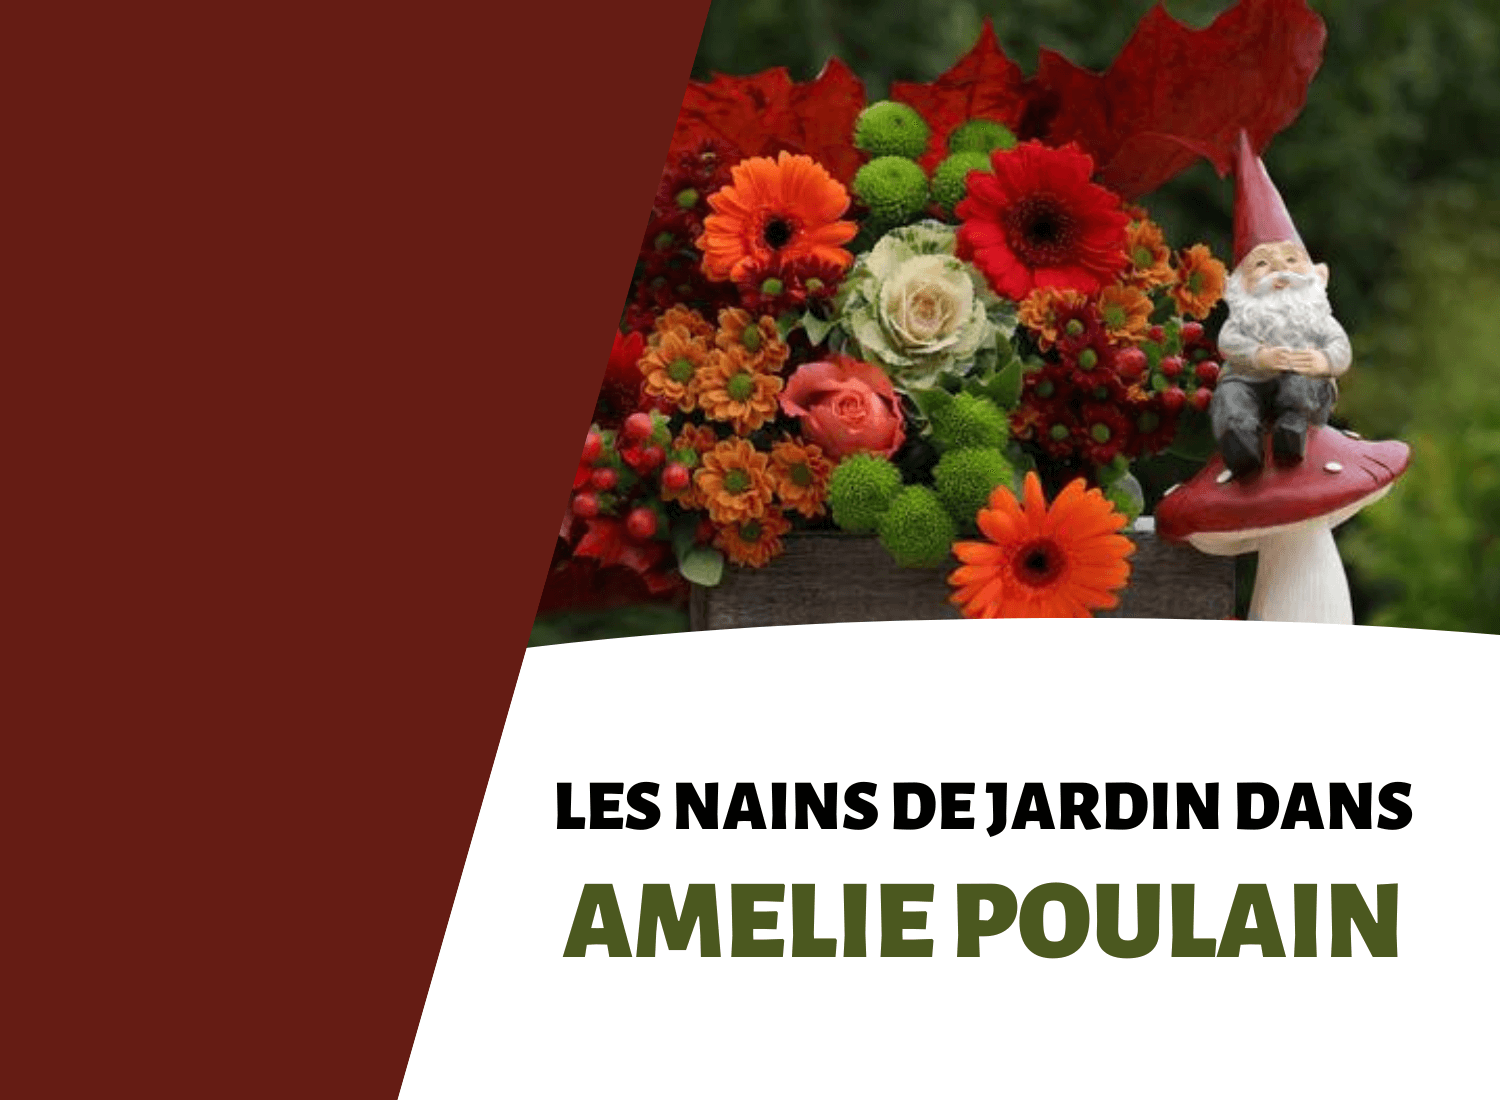 Le nain de jardin dans Le Fabuleux Destin d'Amélie Poulain